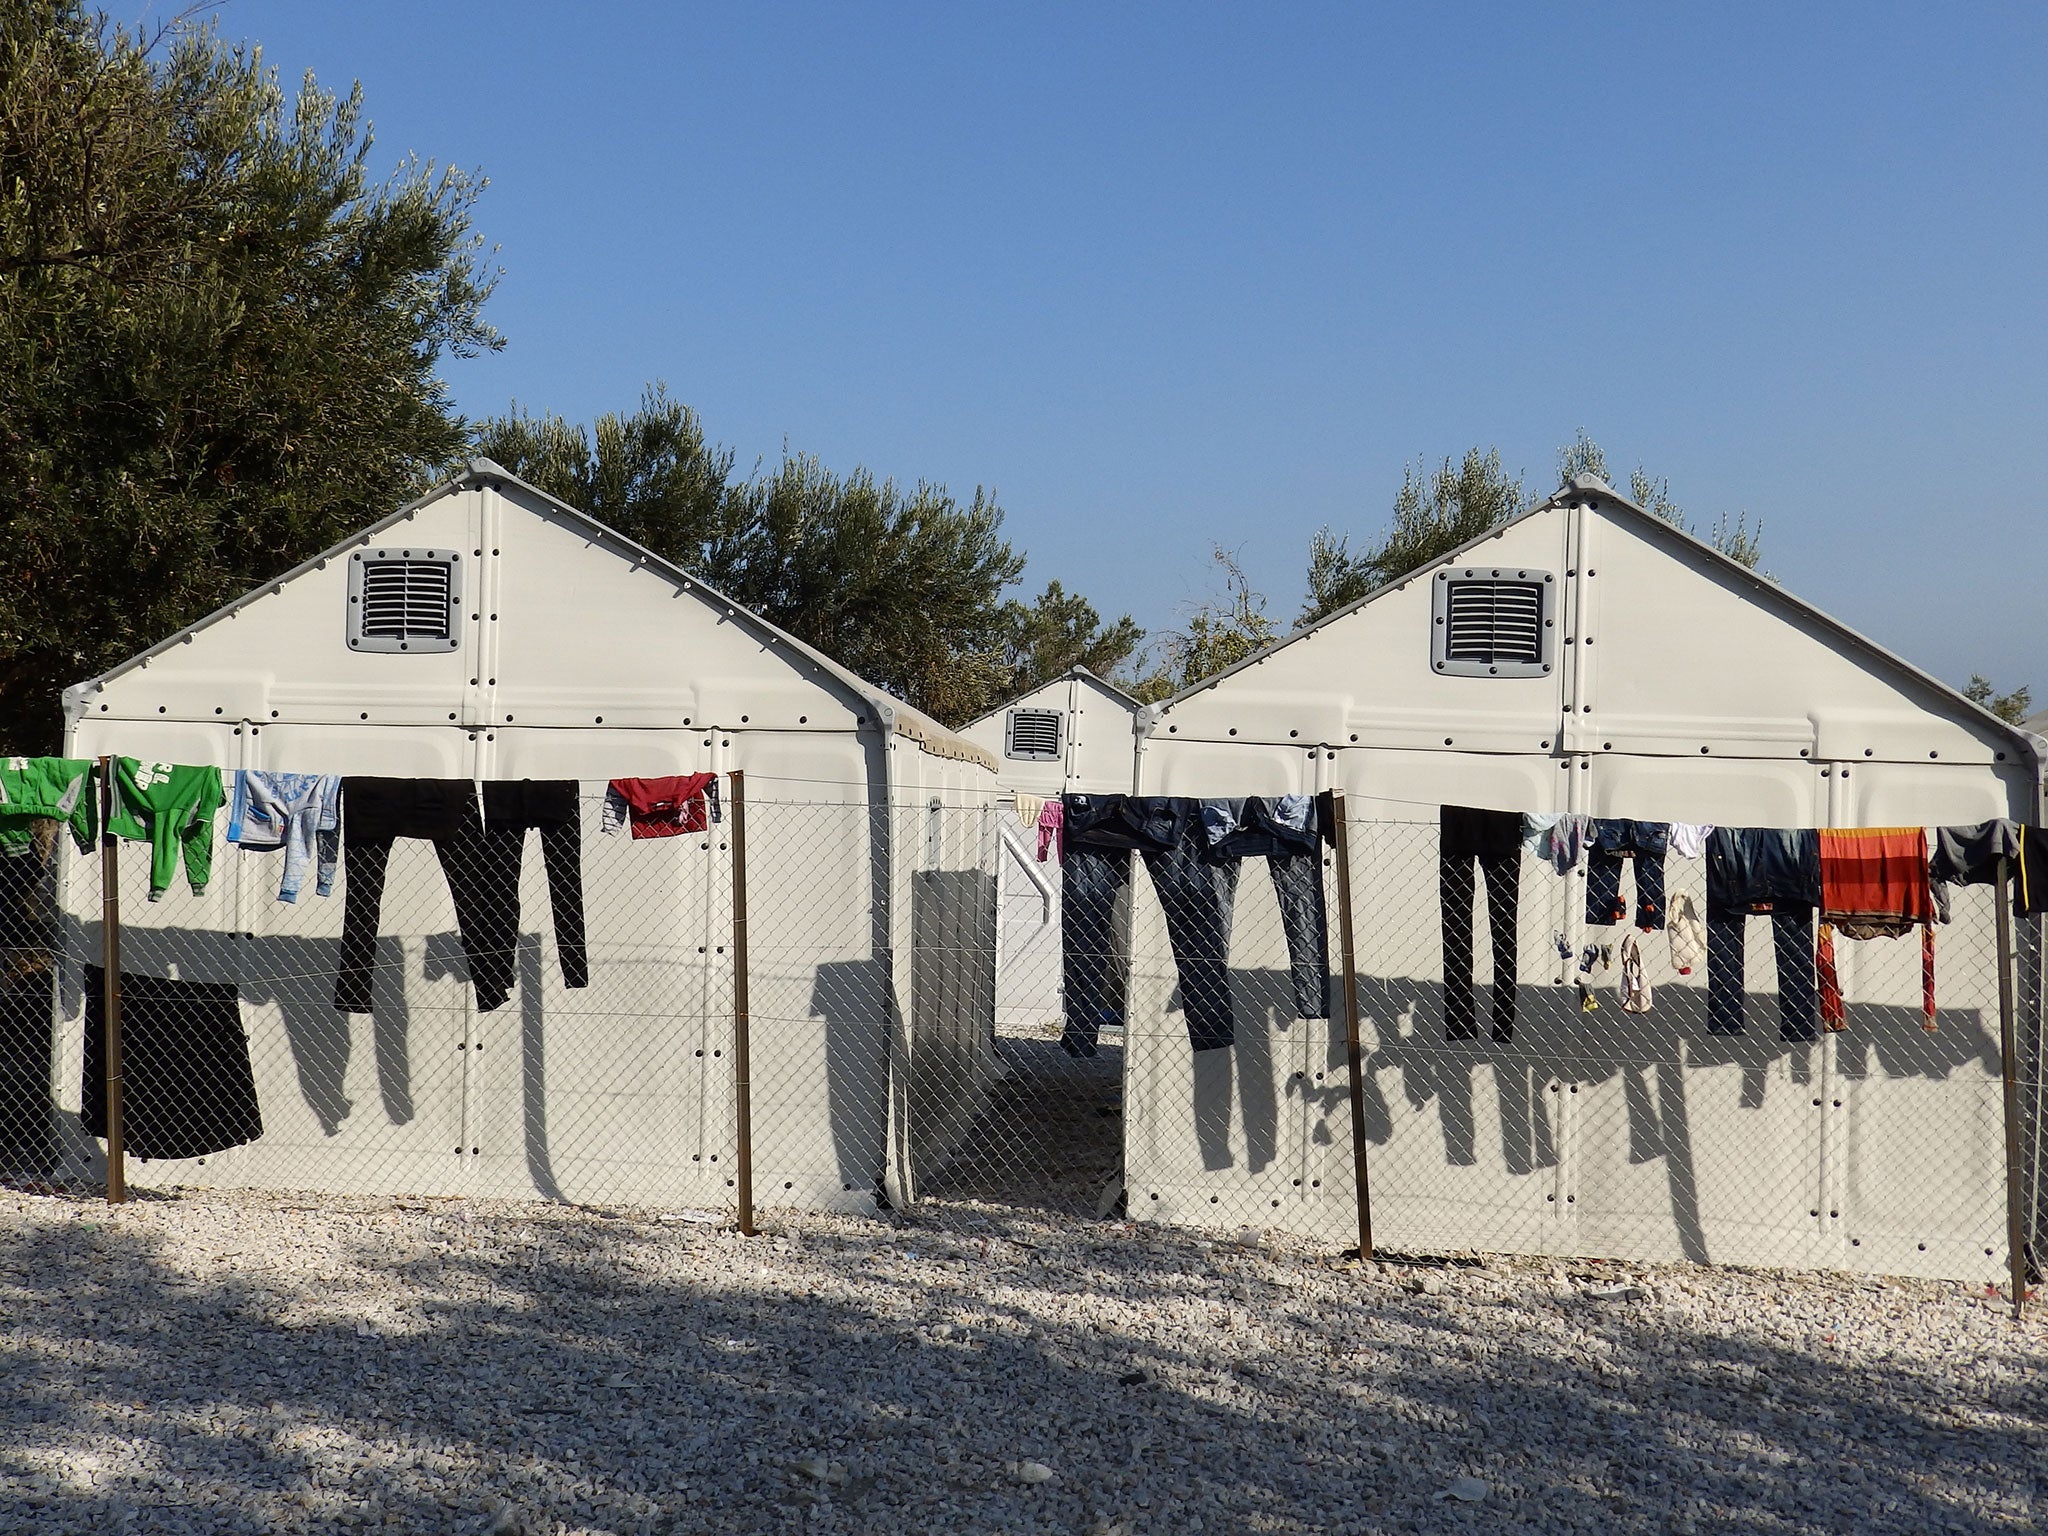 Ikea refugee shelters in Kara Tepe refugee camp in Lesbos, Greece, in November 2015